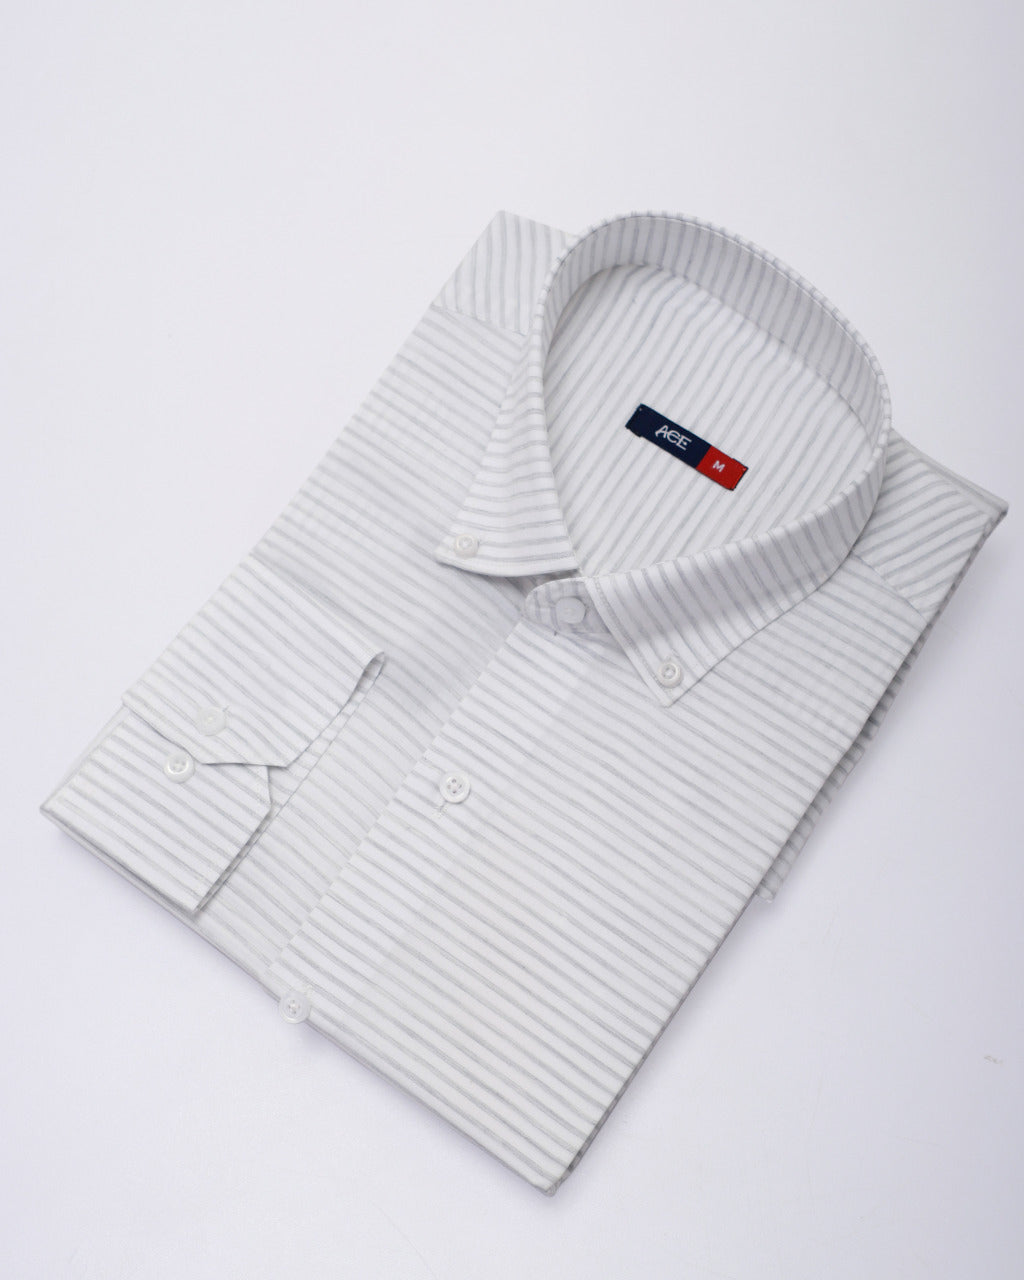 Men's White Full Sleeve Casual Shirt - ACE 70097 (S21)